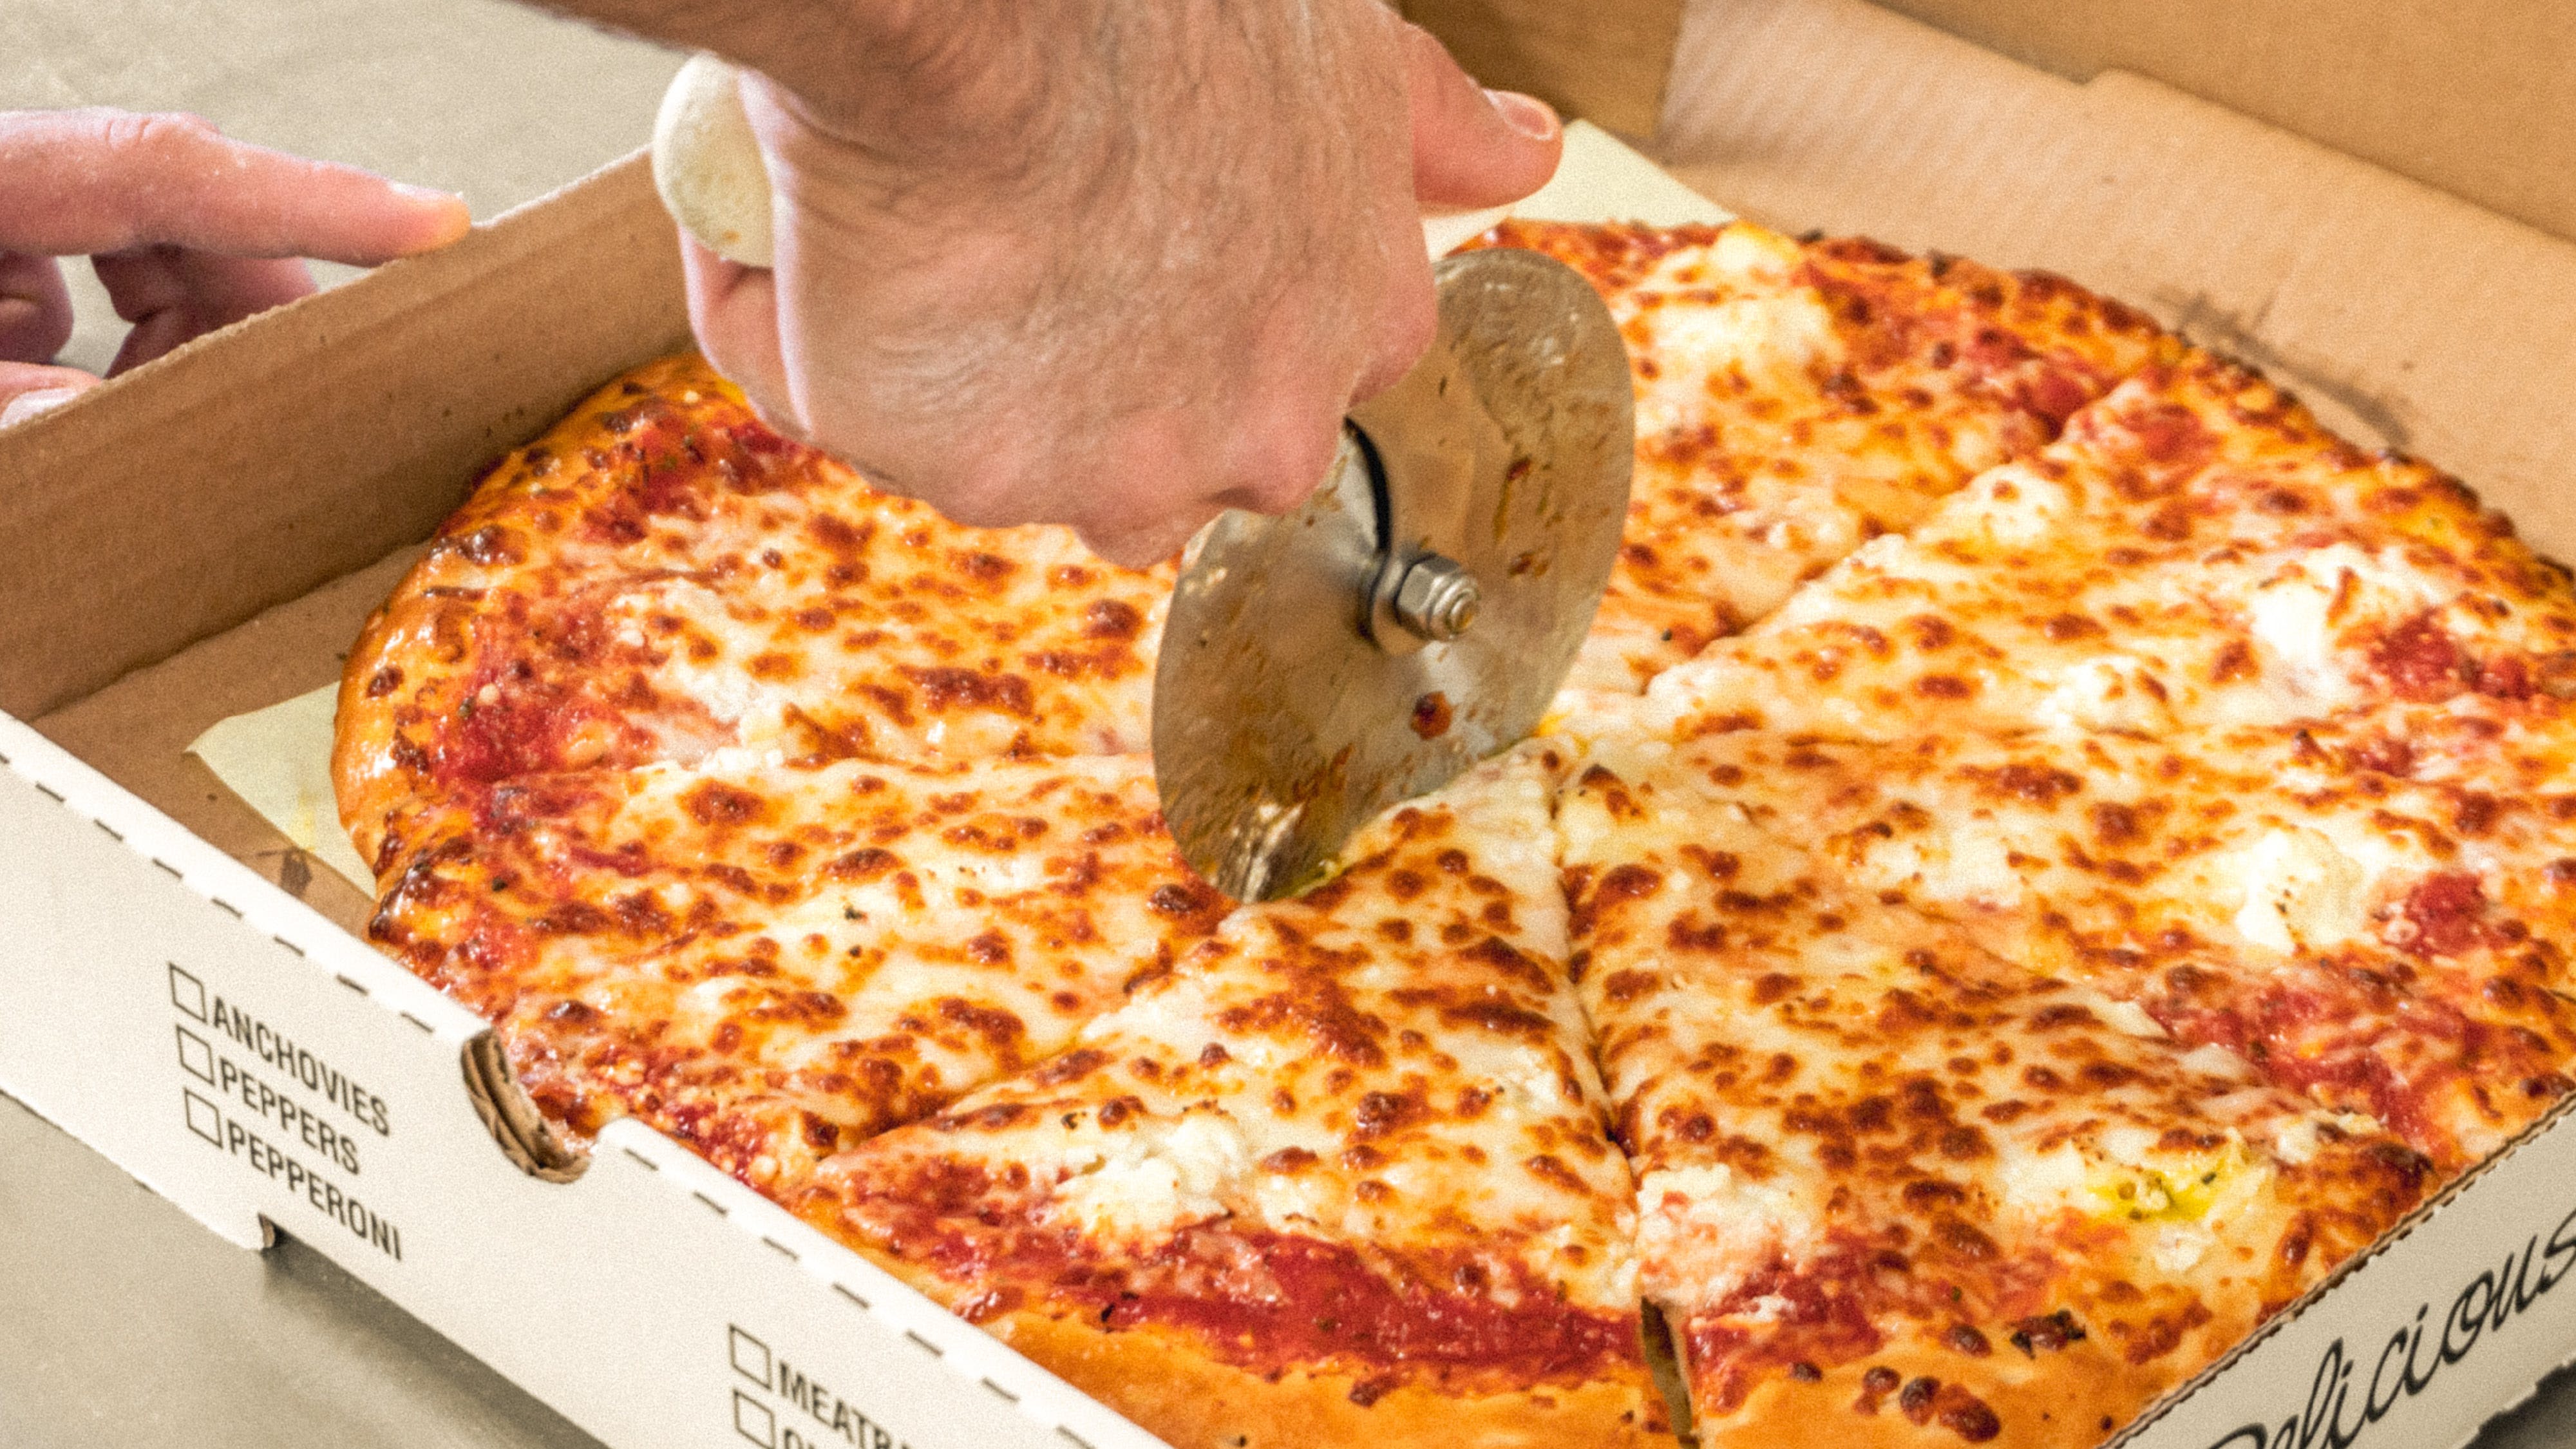 Christo's Famous Pizza hero